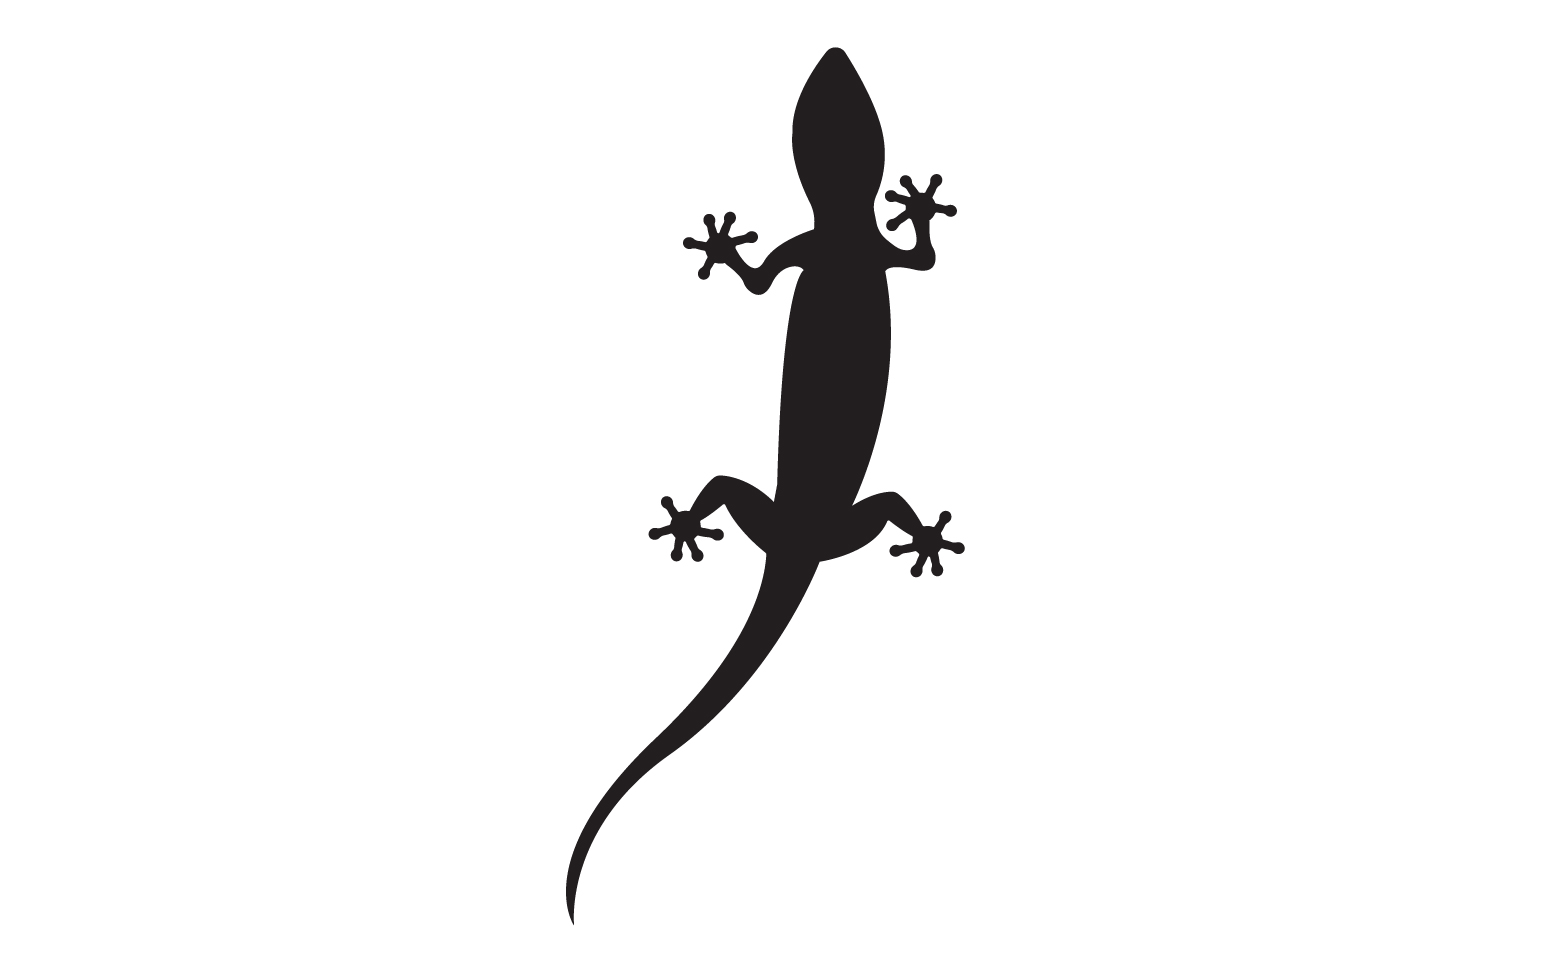 Lizard chameleon home lizard logo v58